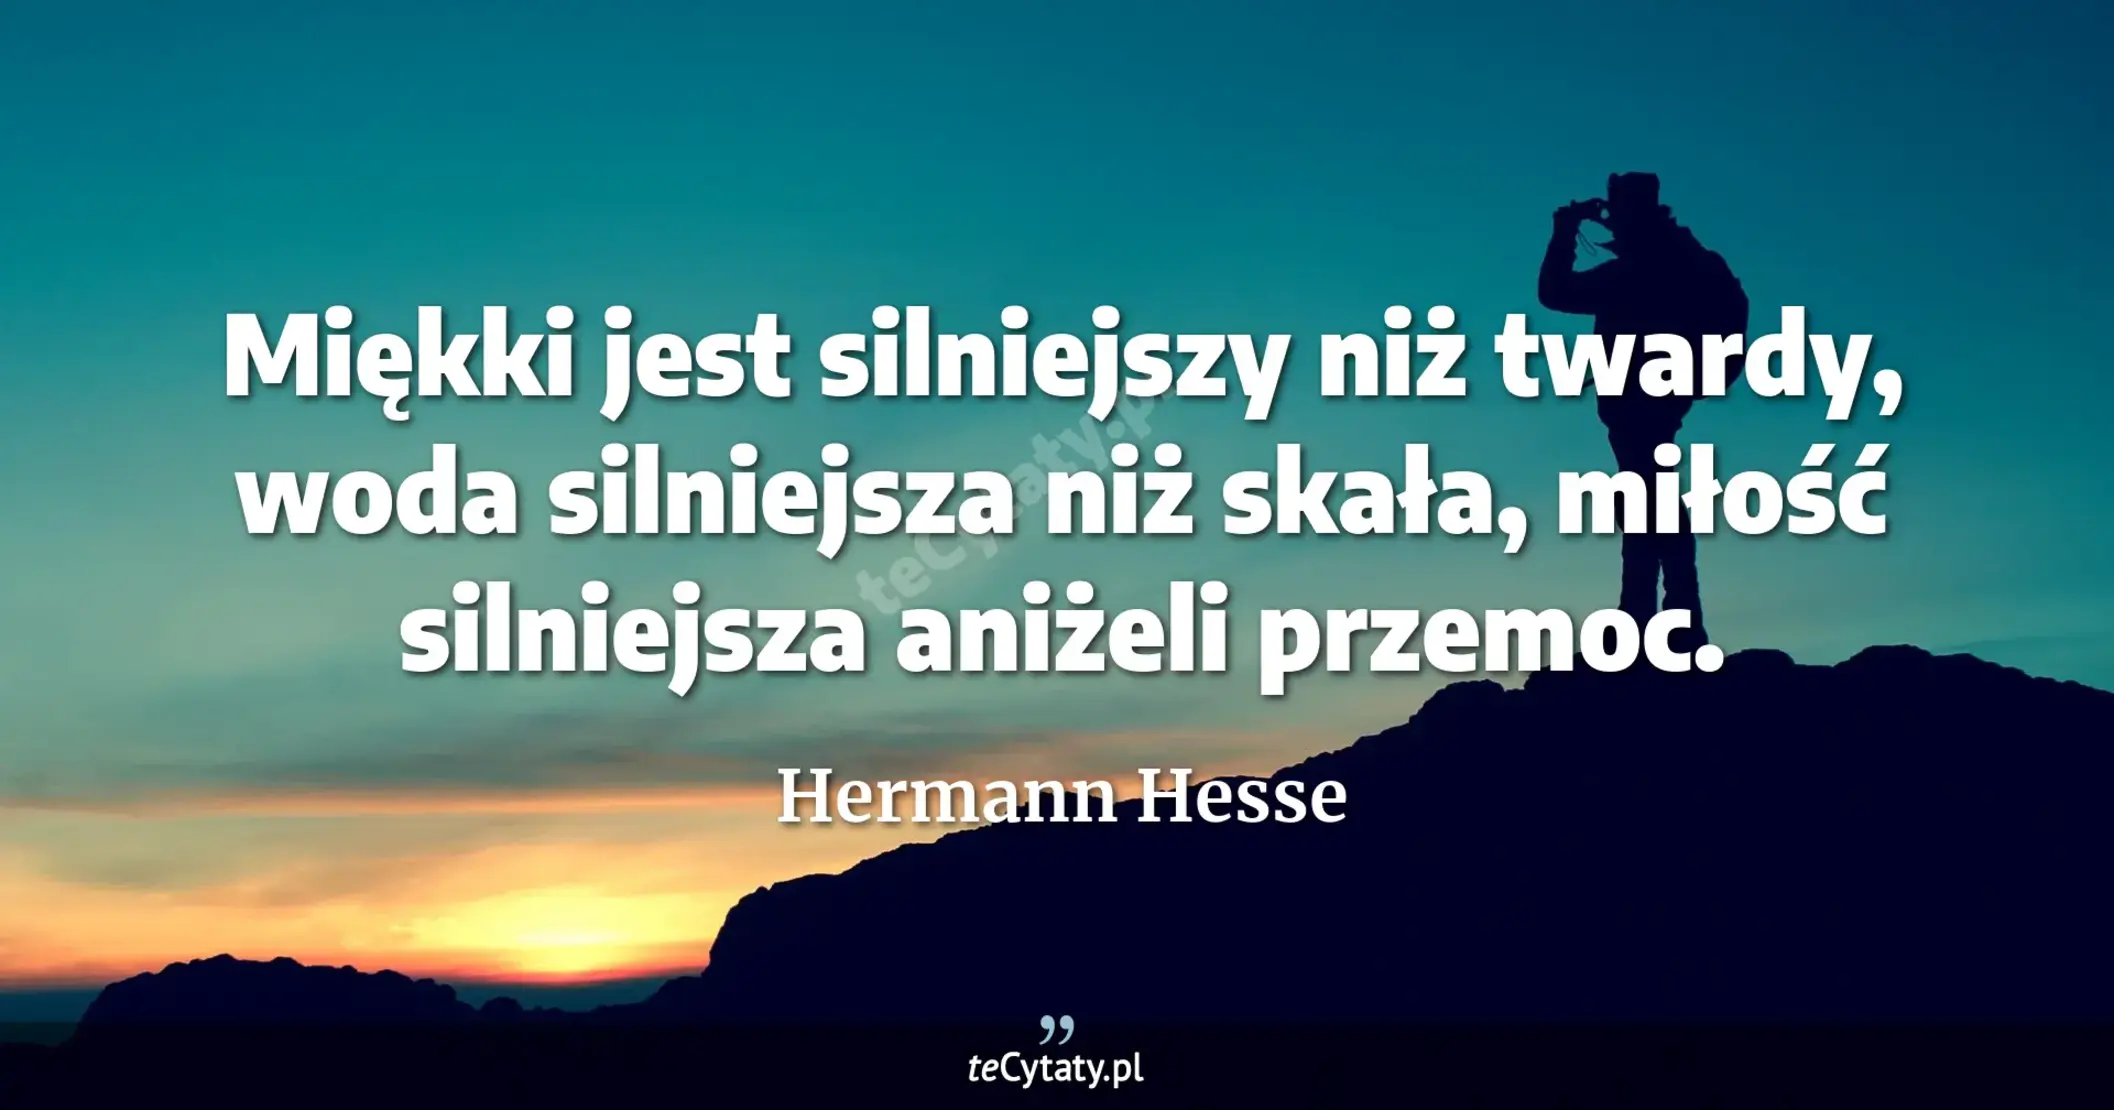 Miękki jest silniejszy niż twardy, woda silniejsza niż skała, miłość silniejsza aniżeli przemoc. - Hermann Hesse